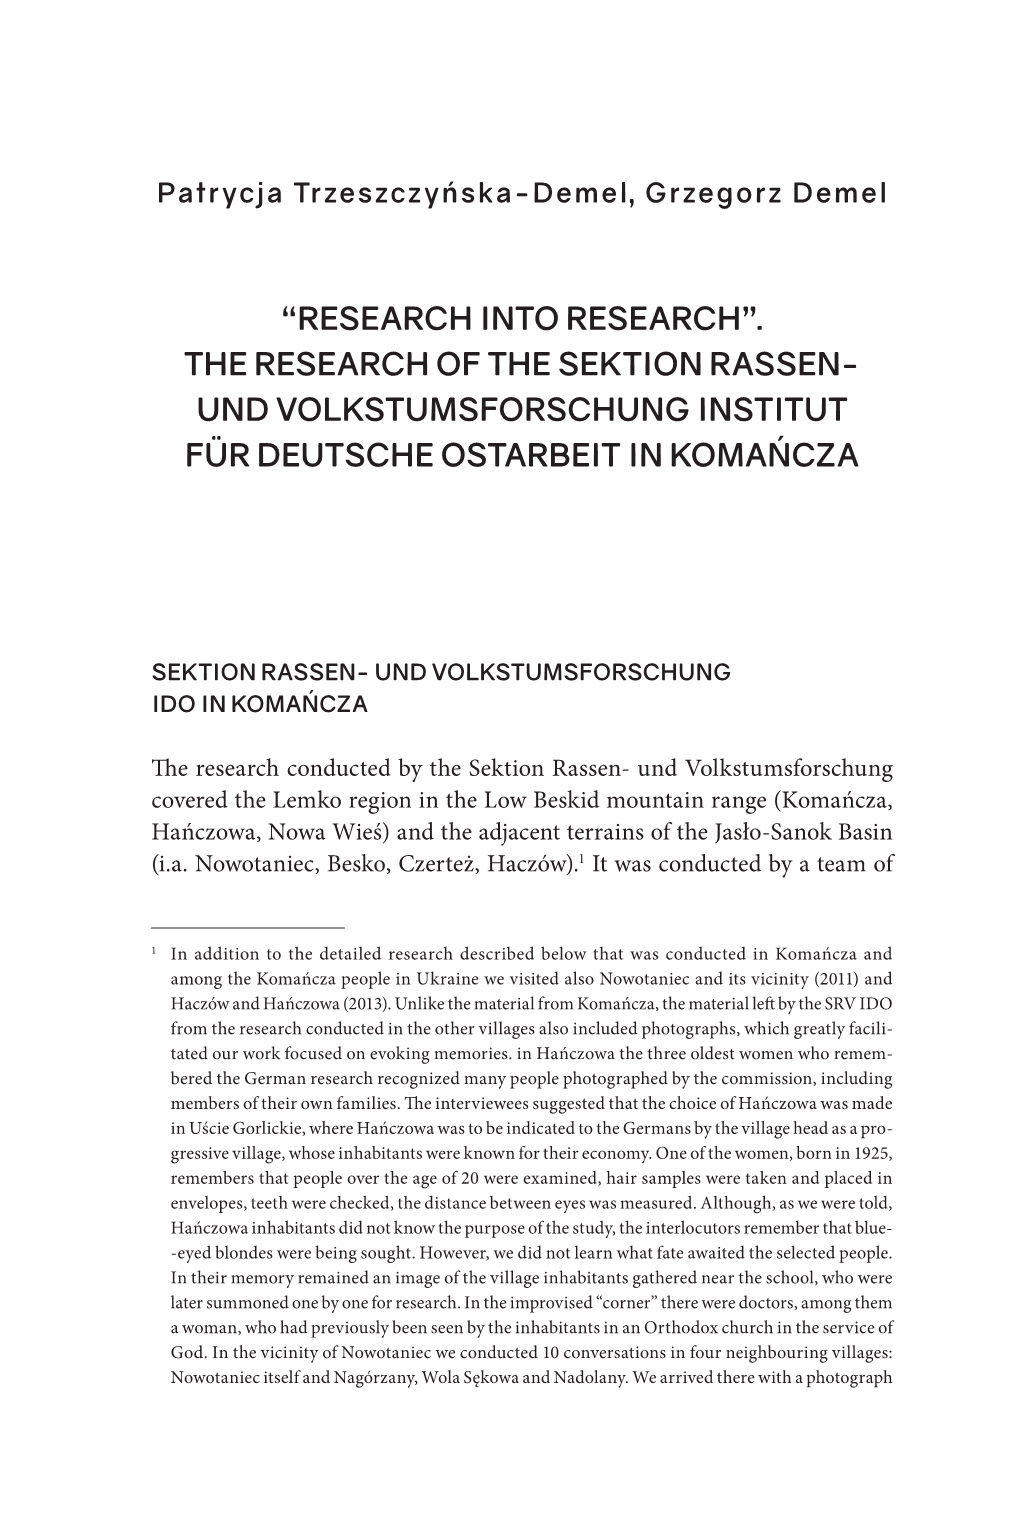 The Research of the Sektion Rassen- Und Volkstumsforschung Institut Für Deutsche Ostarbeit in Komańcza